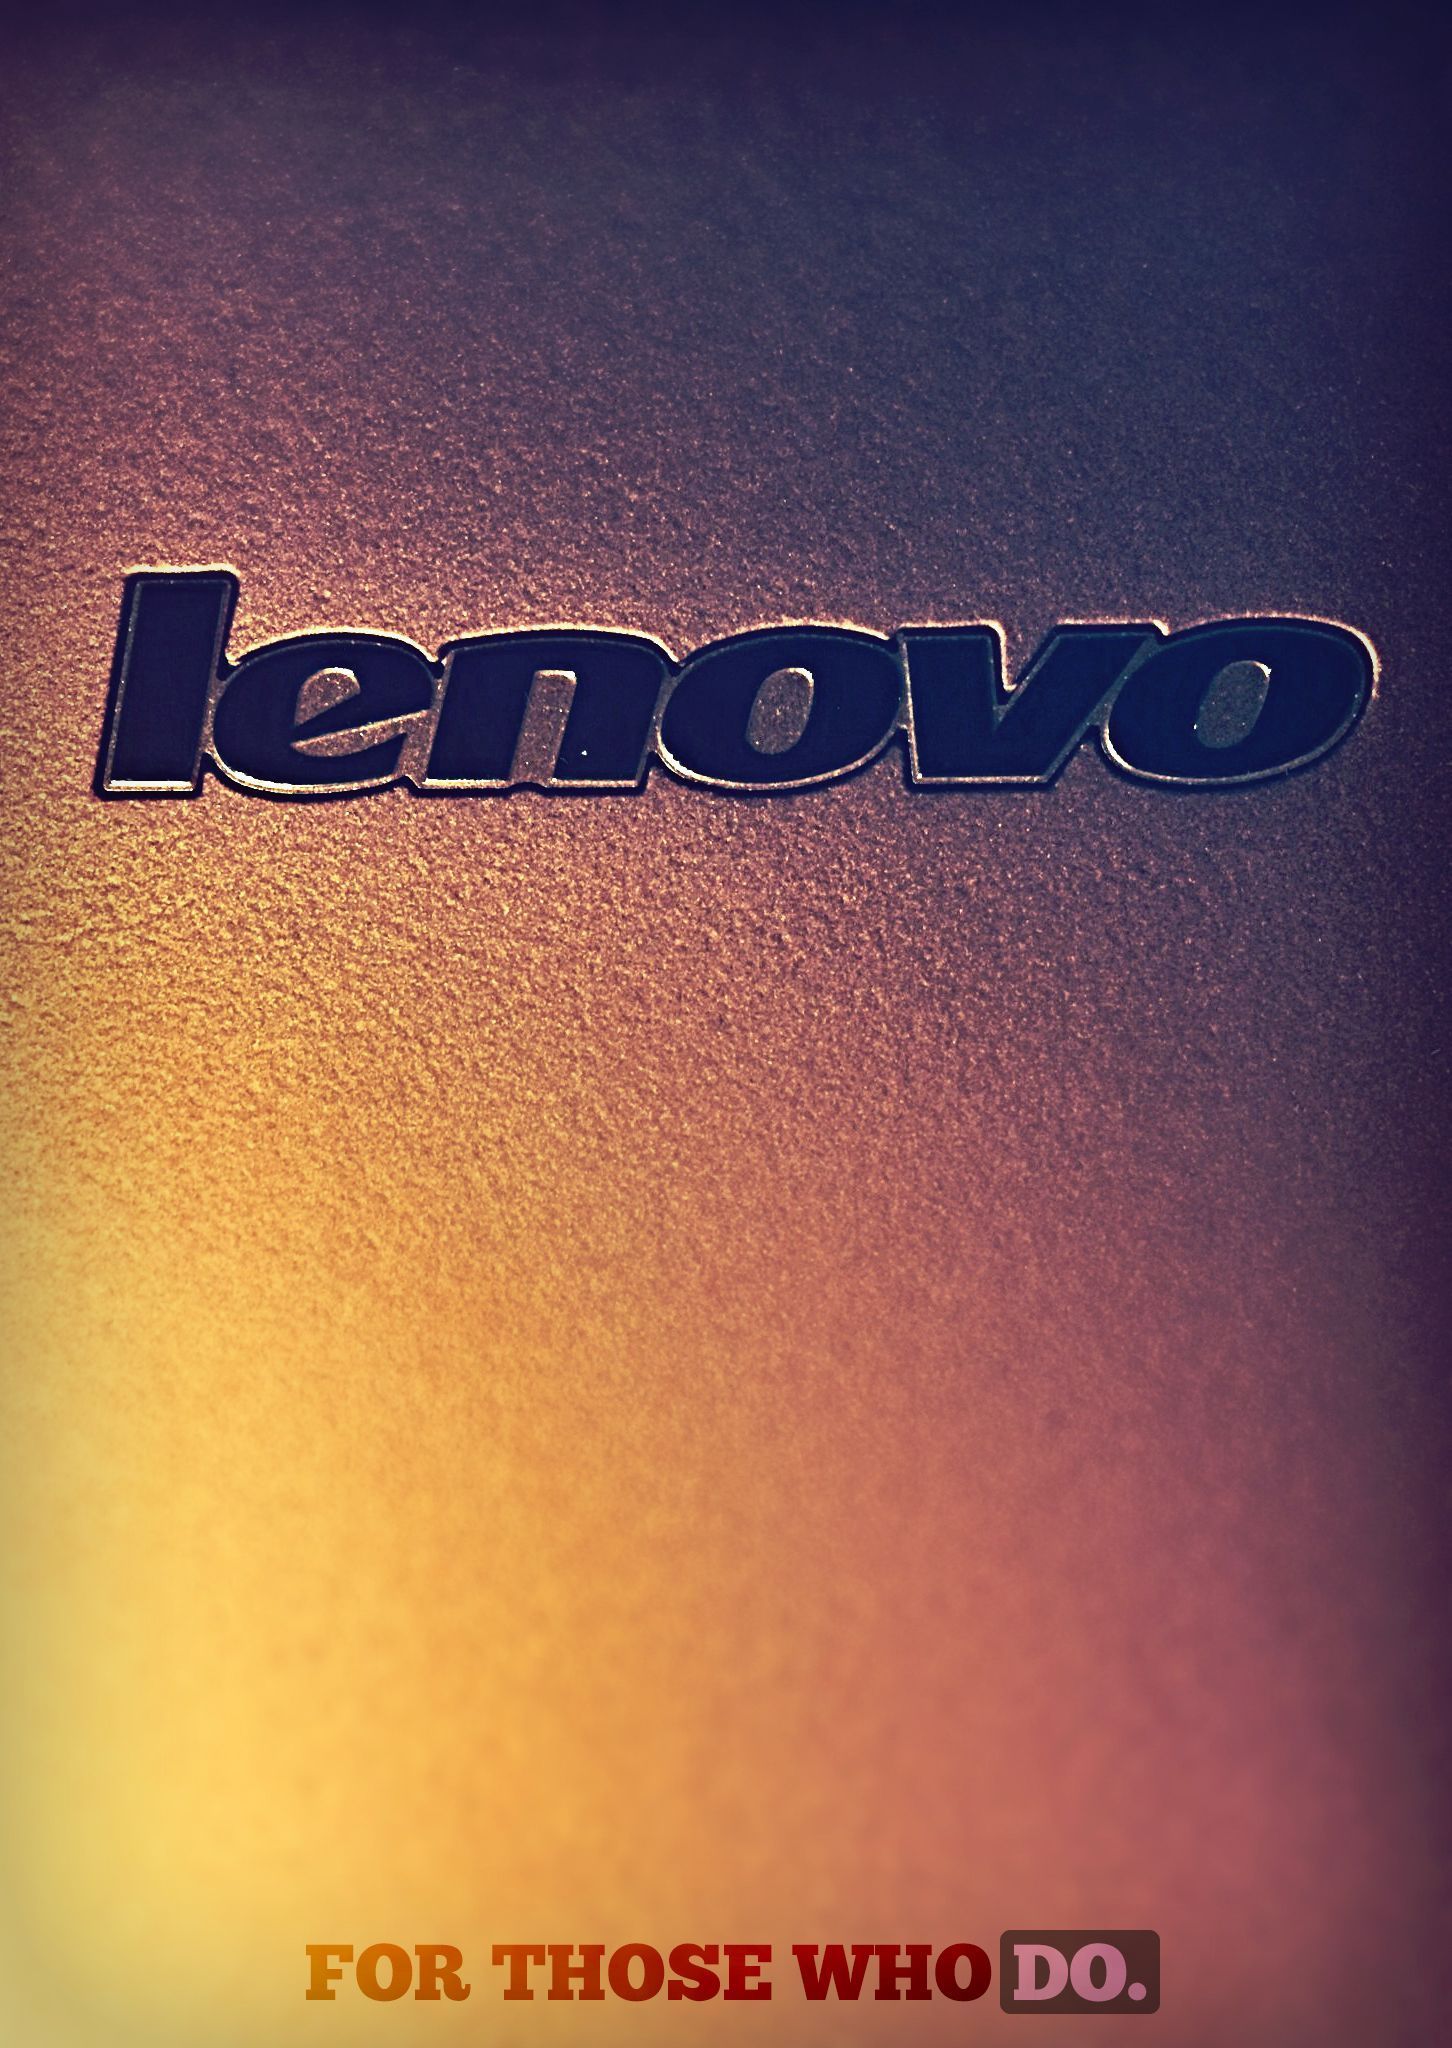 Mobile Lenovo Wallpaper Full HD Pictures